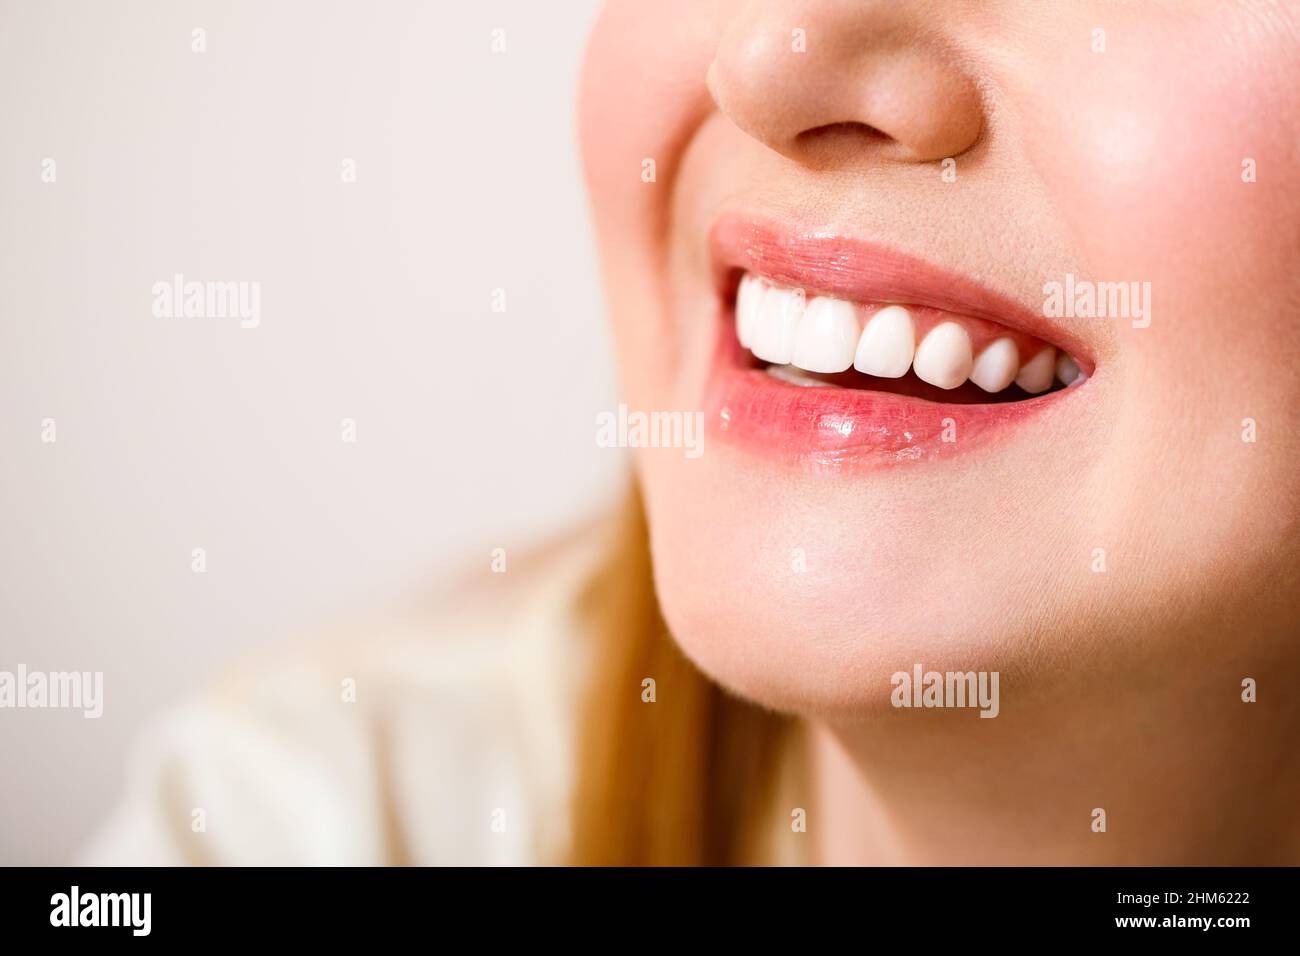 Schönes weibliches Lächeln nach Zahnaufhellung Verfahren. Zahnpflege. Zahnmedizin Konzept. Auf blauem Hintergrund. Stockfoto